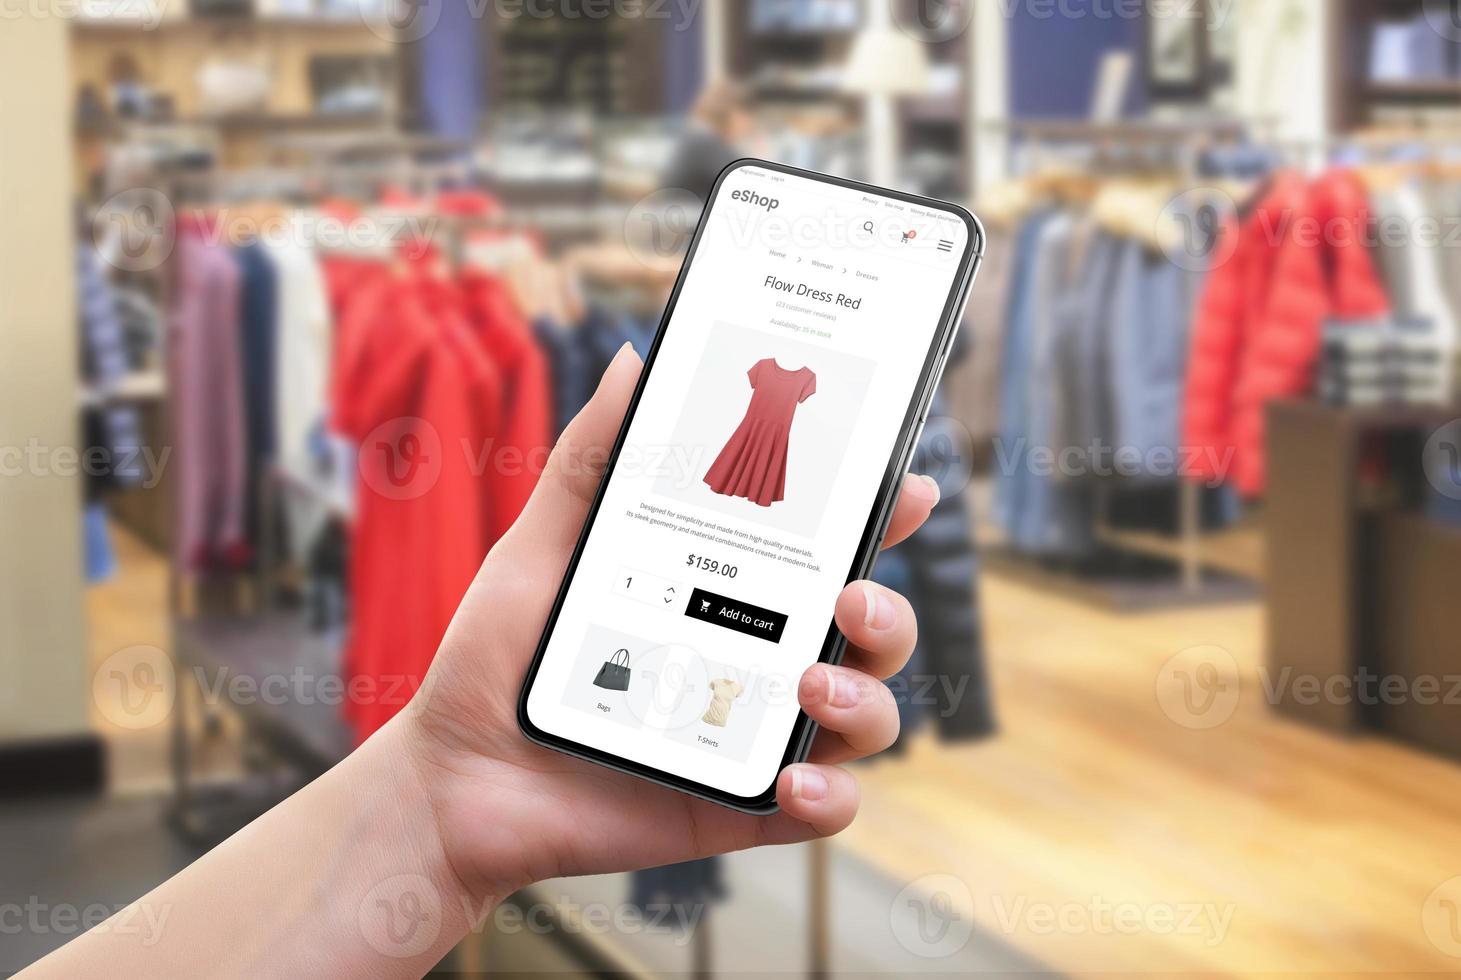 kleding online zoeken in een kledingwinkel. kleur en maat selectie op app. moderne e-commerce website op een mobiele telefoon in de hand van een vrouw foto